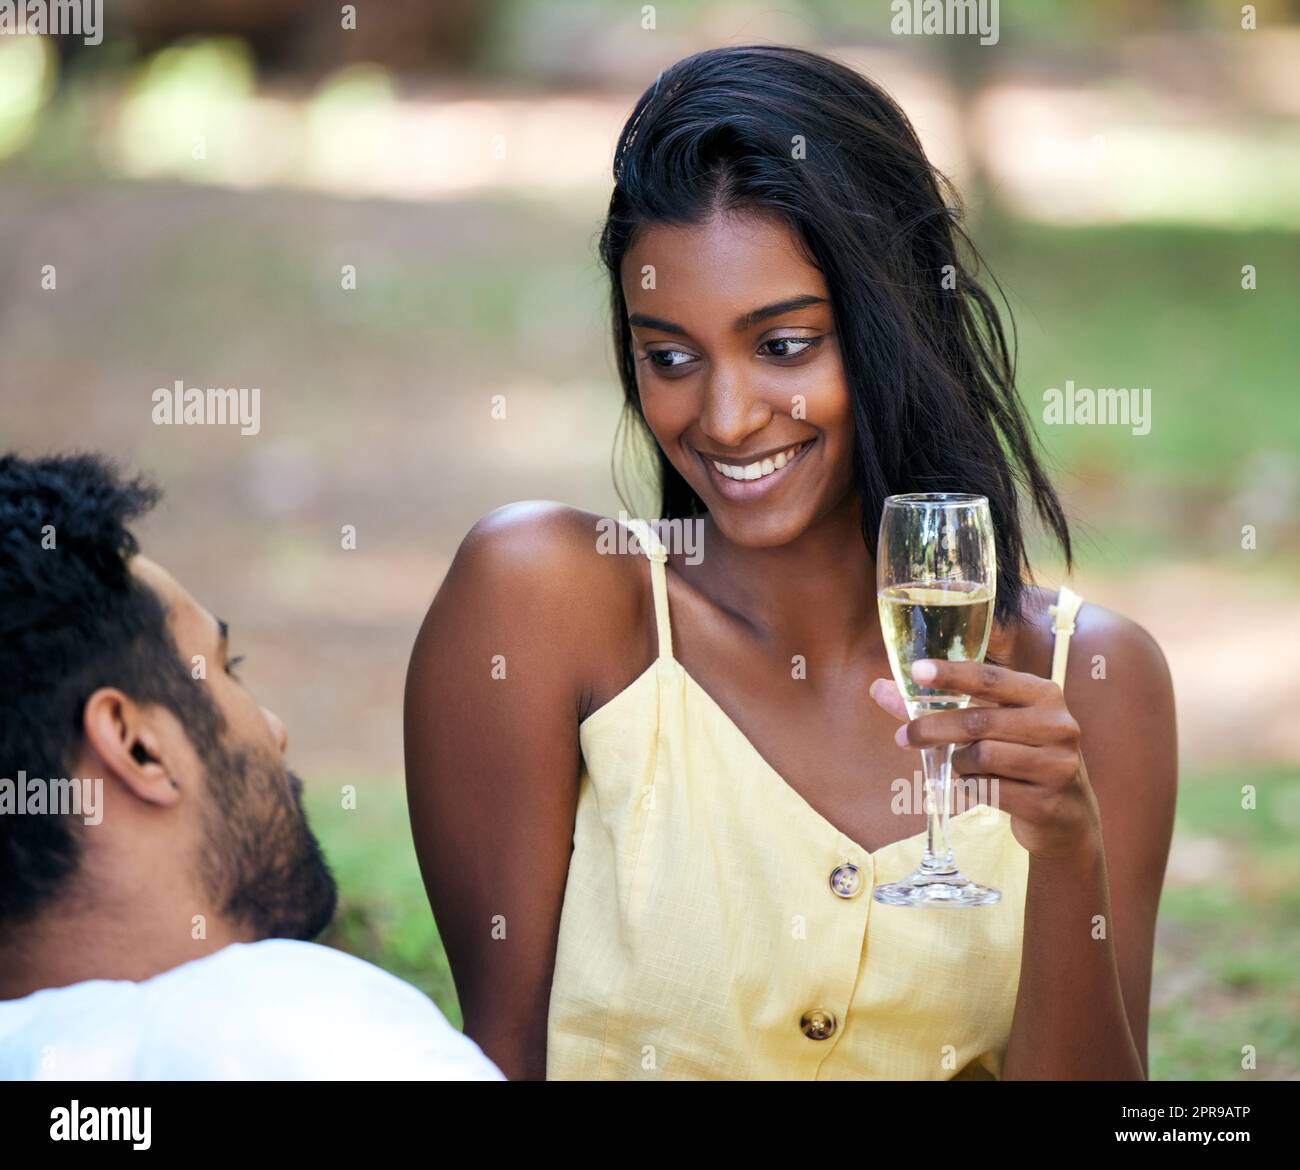 Er weiß, wie ich mich wohl fühlen kann. Eine junge Frau, die Champagner trinkt, während sie im Park ein Date abhielt. Stockfoto